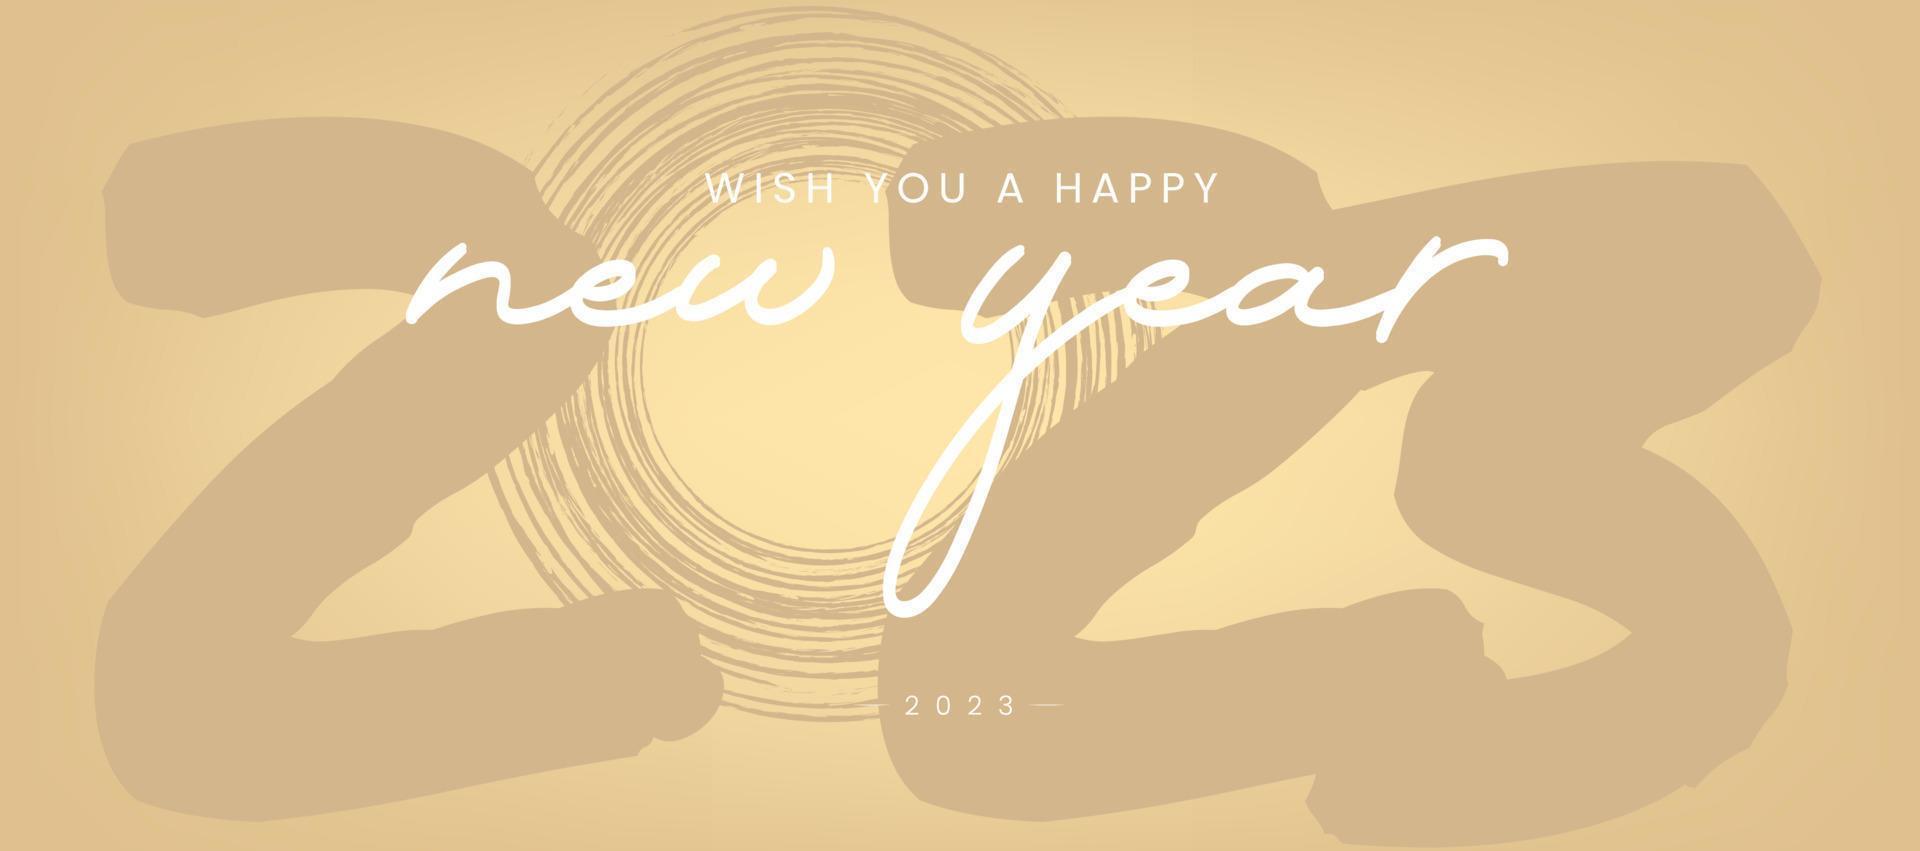 le deseamos un feliz año nuevo 2023 concepto de diseño de afiches en diseño vectorial. un texto de feliz año nuevo en color pastel. vector